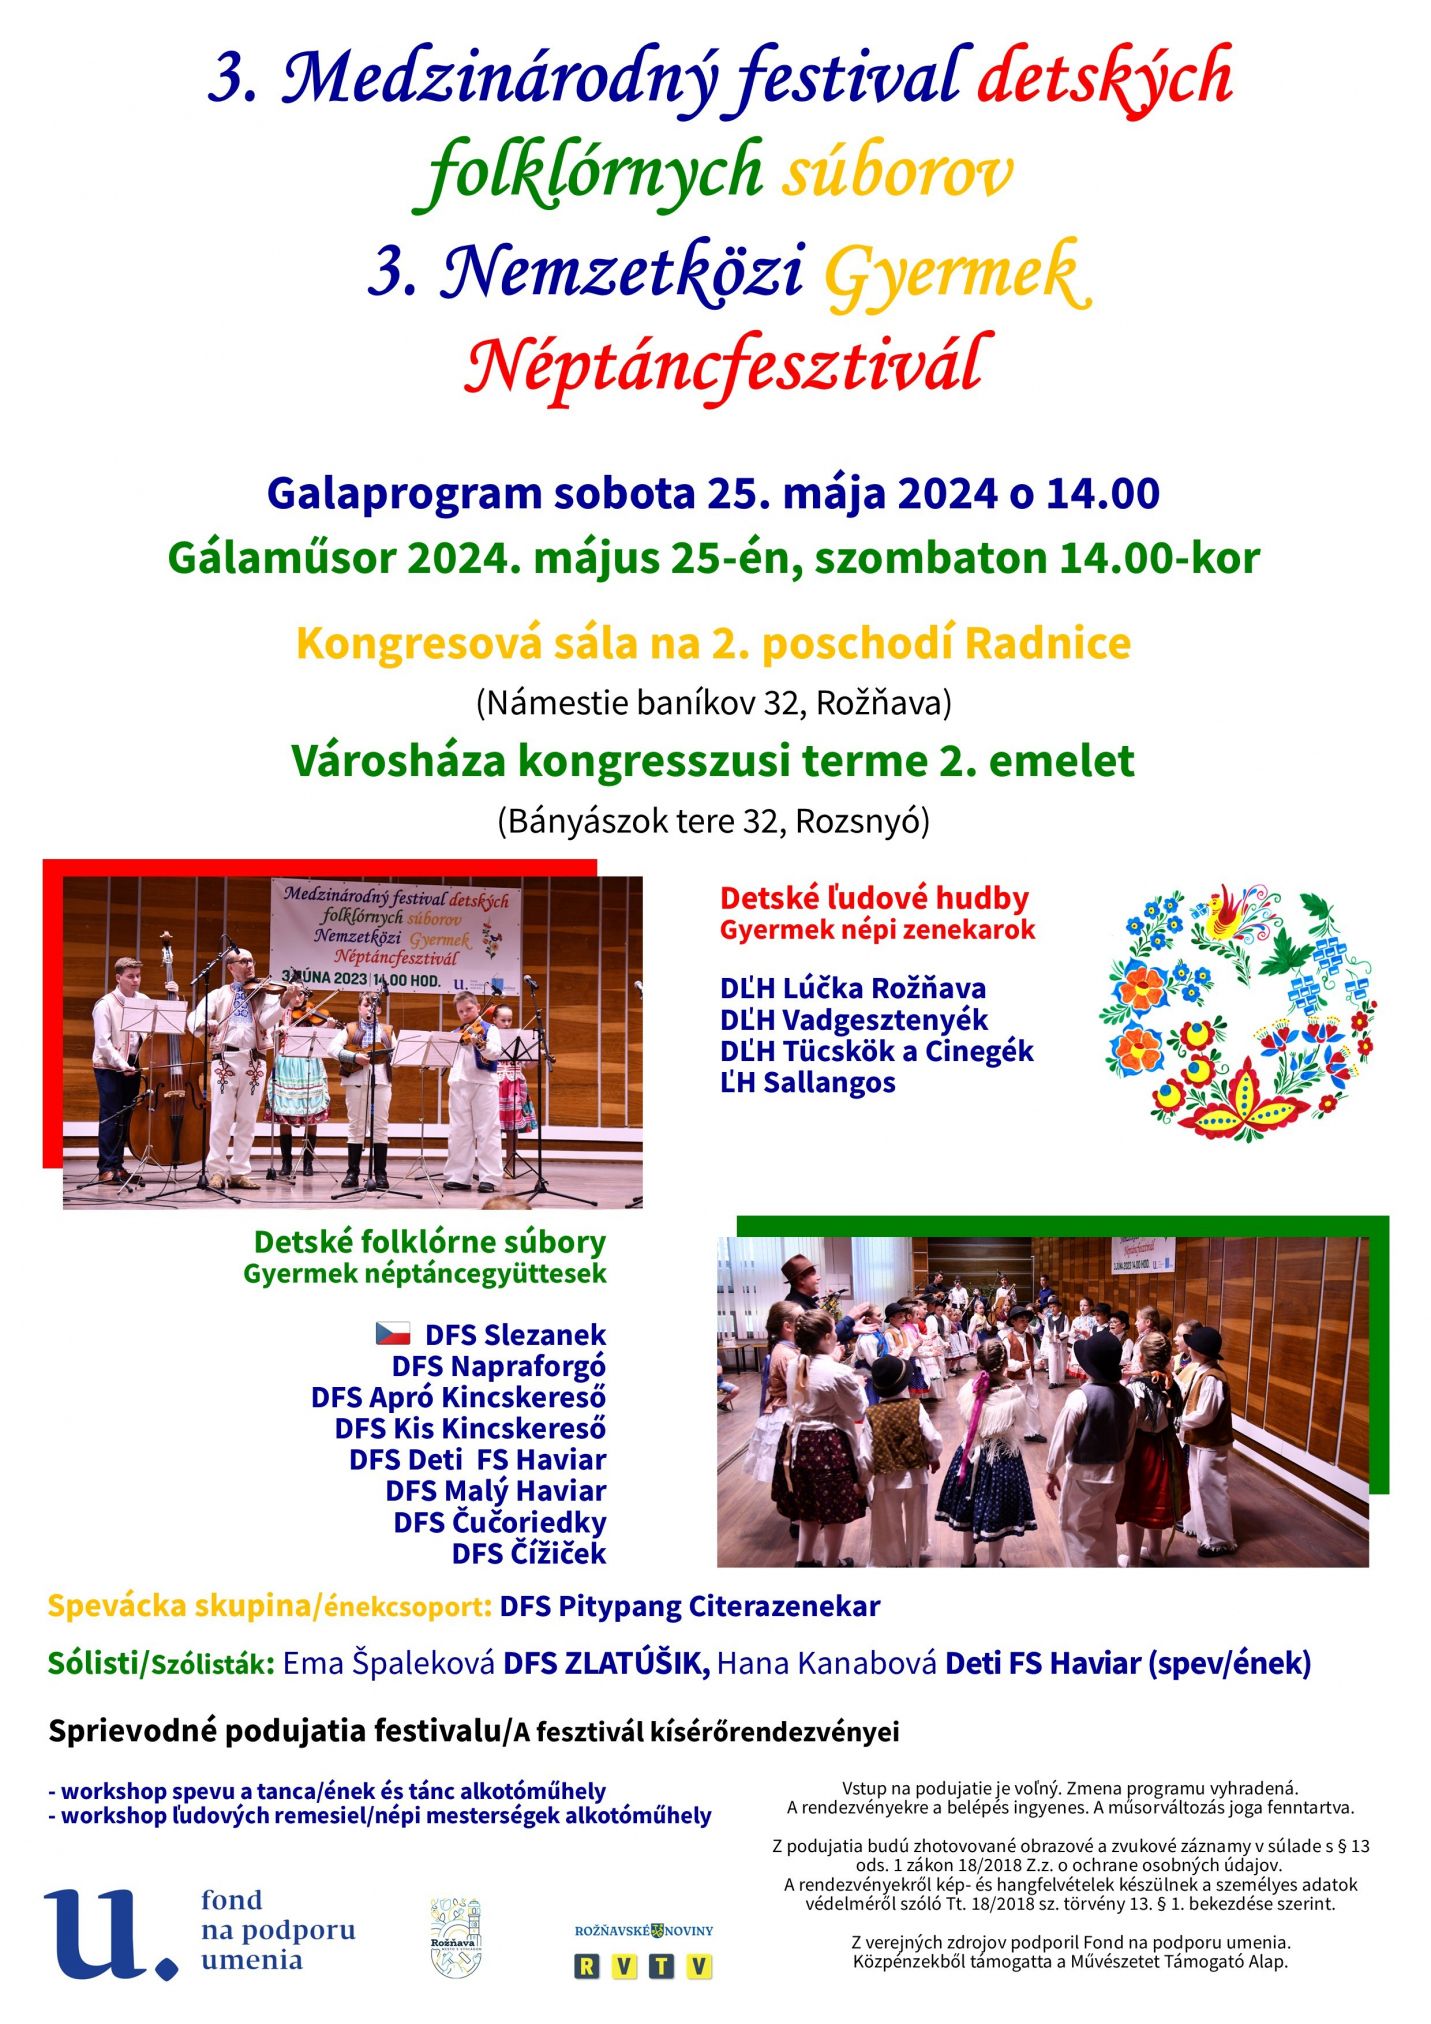 plagat detsky folklorny festival